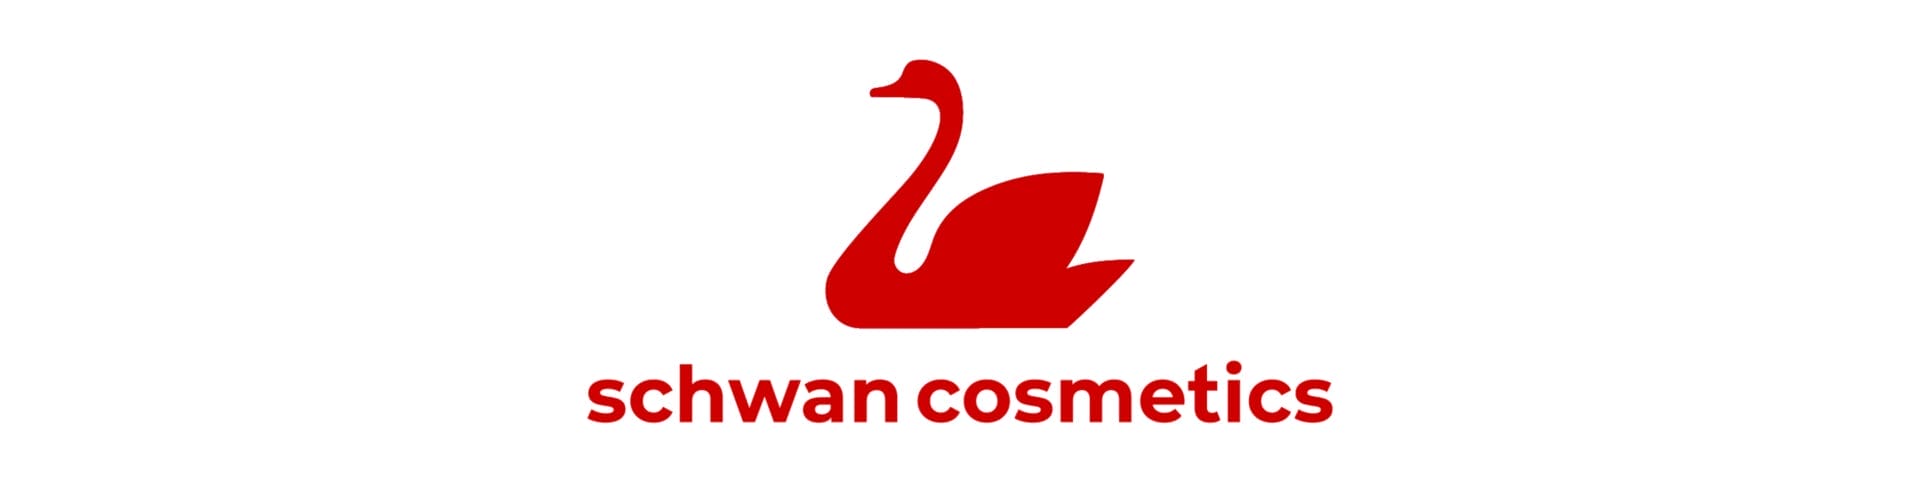 Euro Cosmetics - Shwan Logo